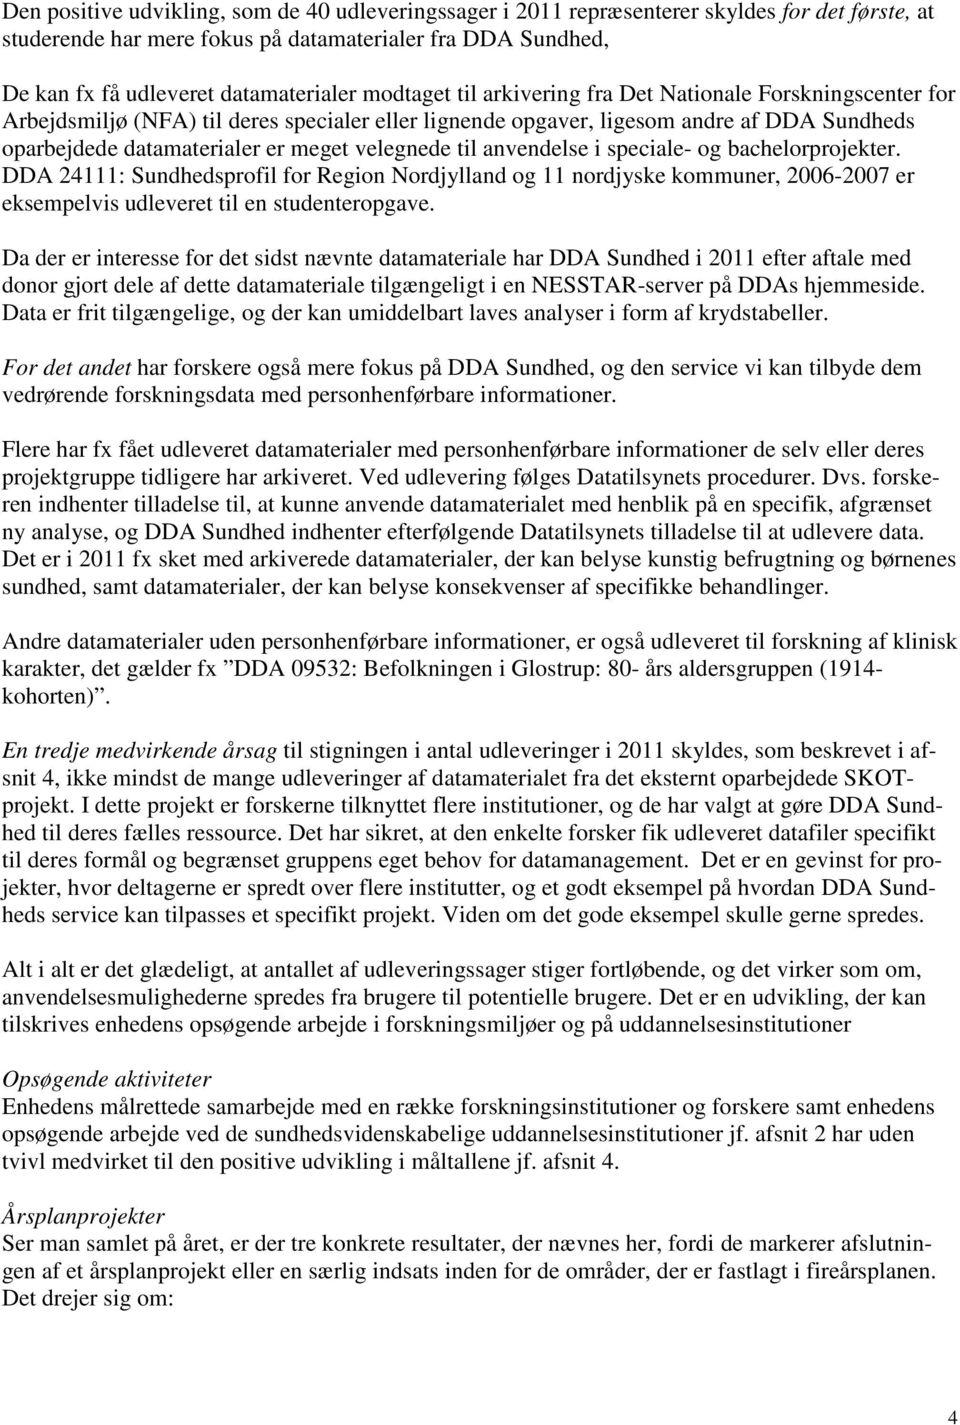 velegnede til anvendelse i speciale- og bachelorprojekter. DDA 24111: Sundhedsprofil for Region Nordjylland og 11 nordjyske kommuner, 2006-2007 er eksempelvis udleveret til en studenteropgave.